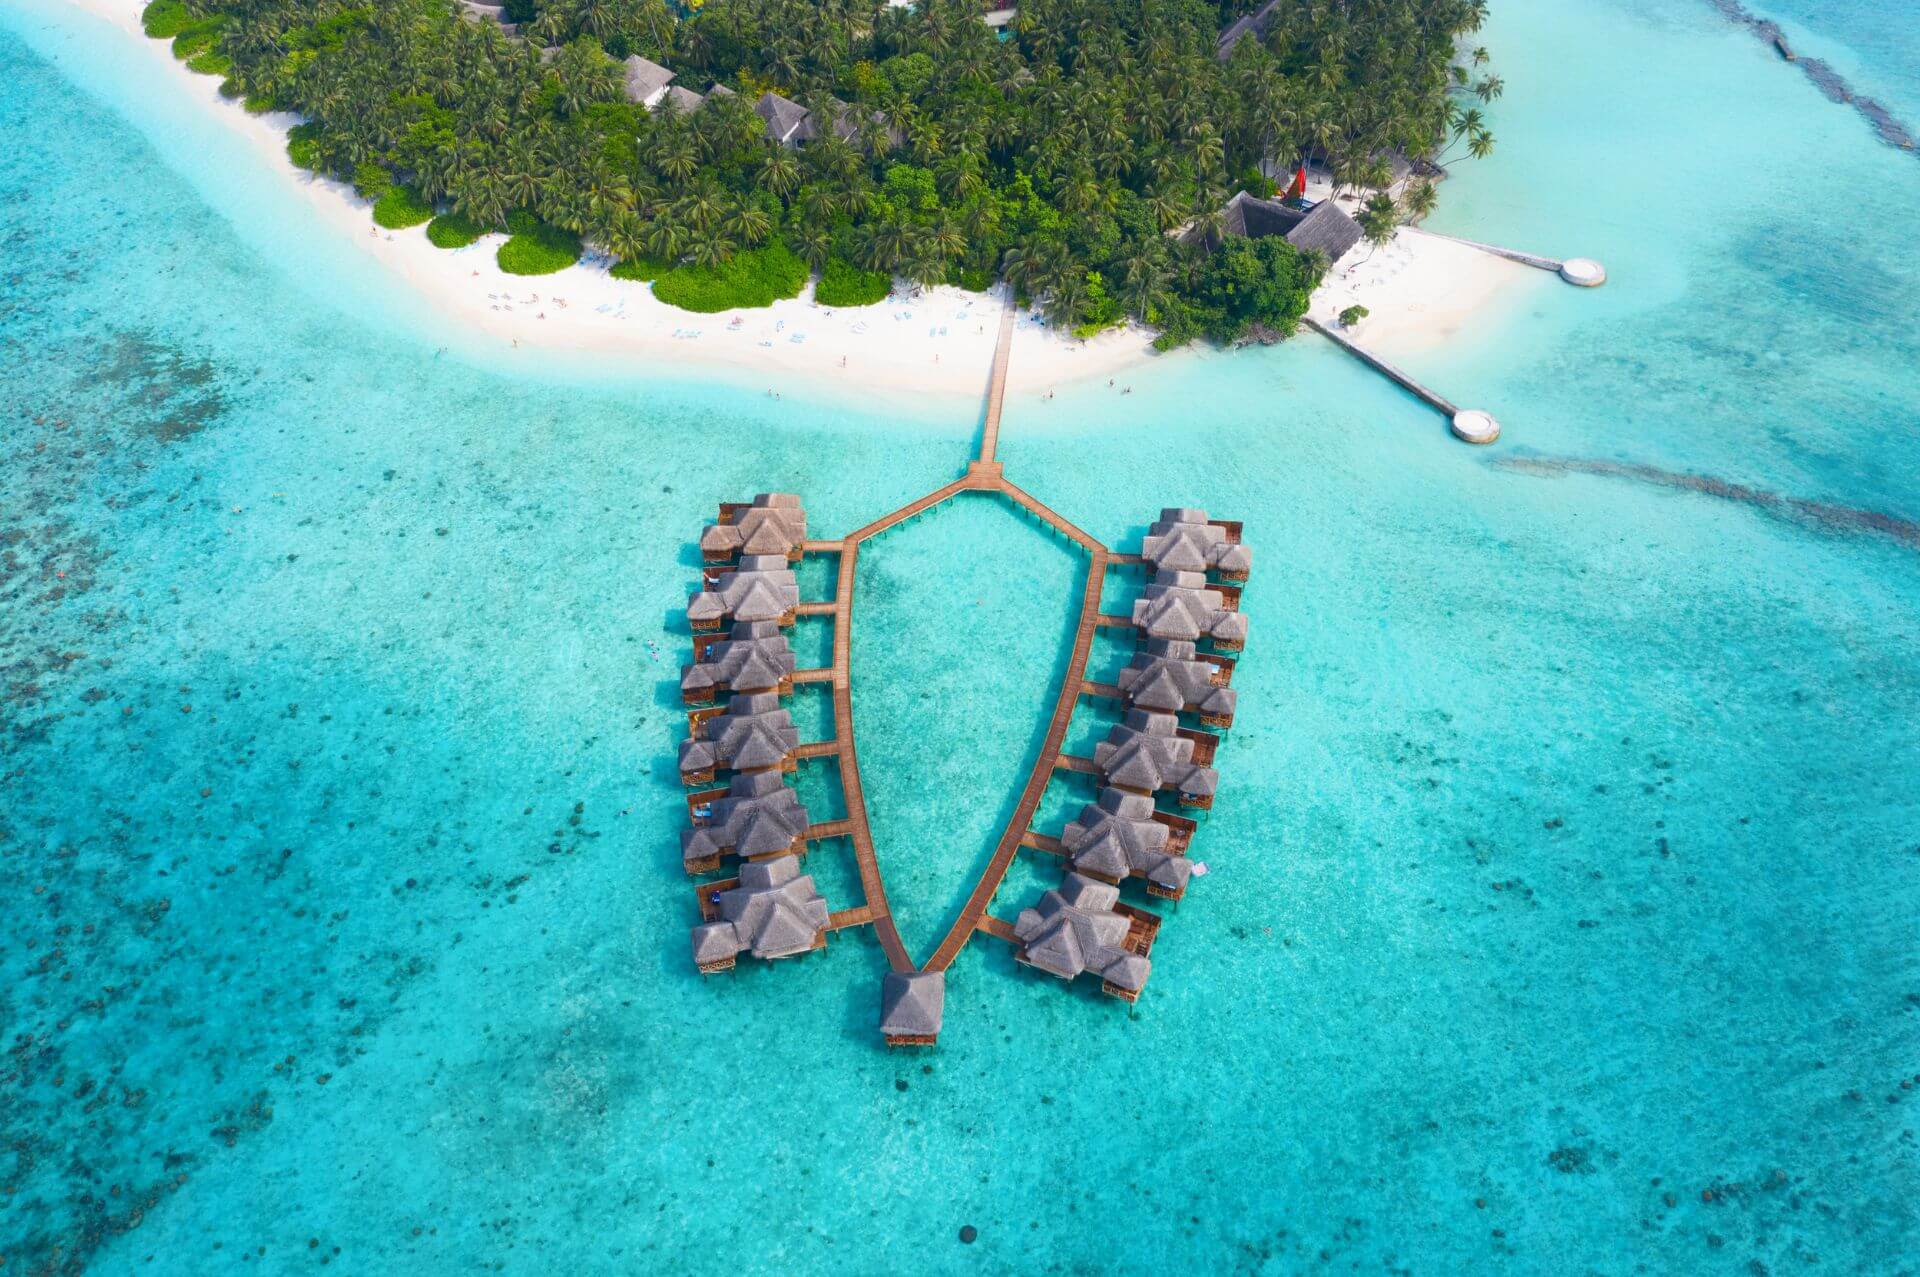 Experiências incríveis esperam você para relaxar nos bangalôs e nas praias de areia branca das Maldivas e suas ilhas. 